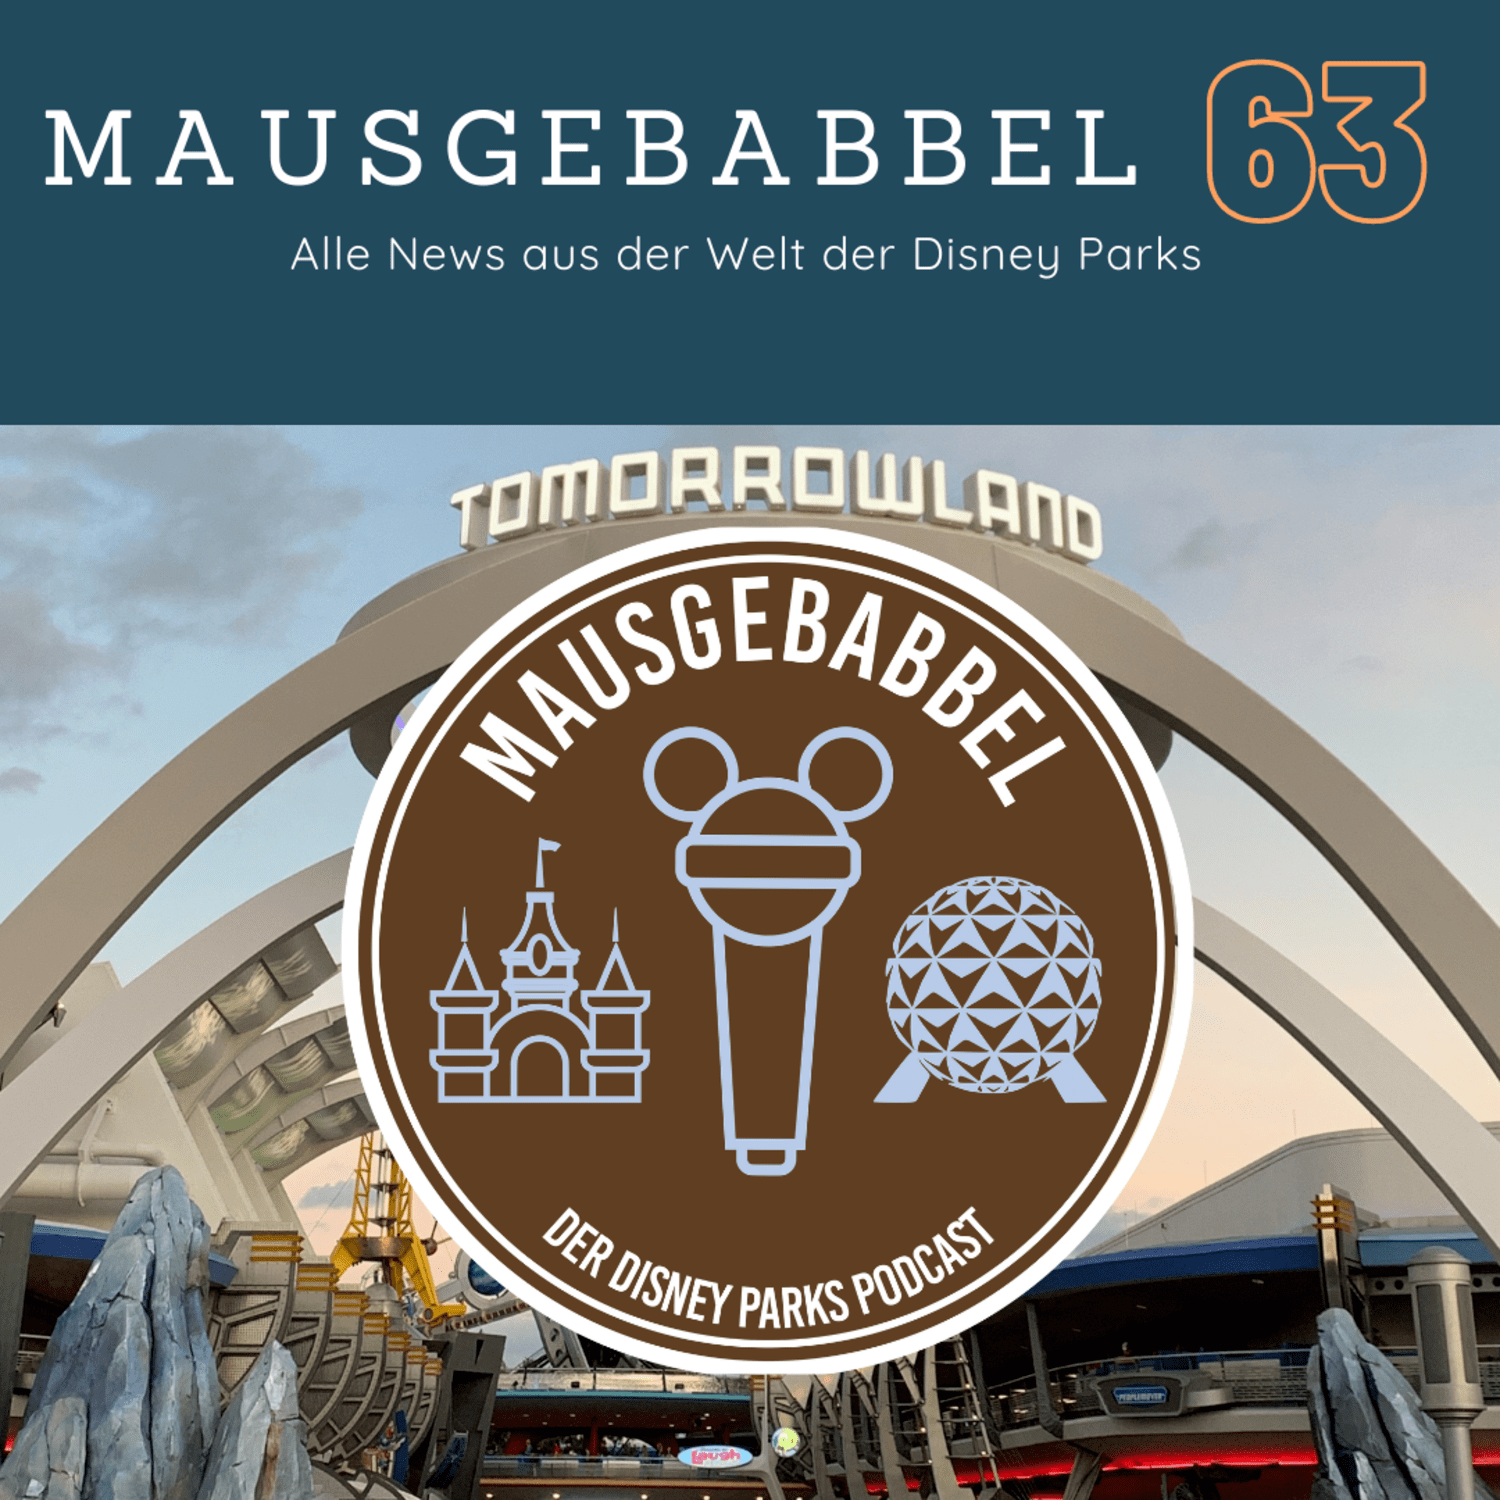 Mausgebabbel 63 - Die spannendsten Neuigkeiten aus Disneyland Paris und Co. 3